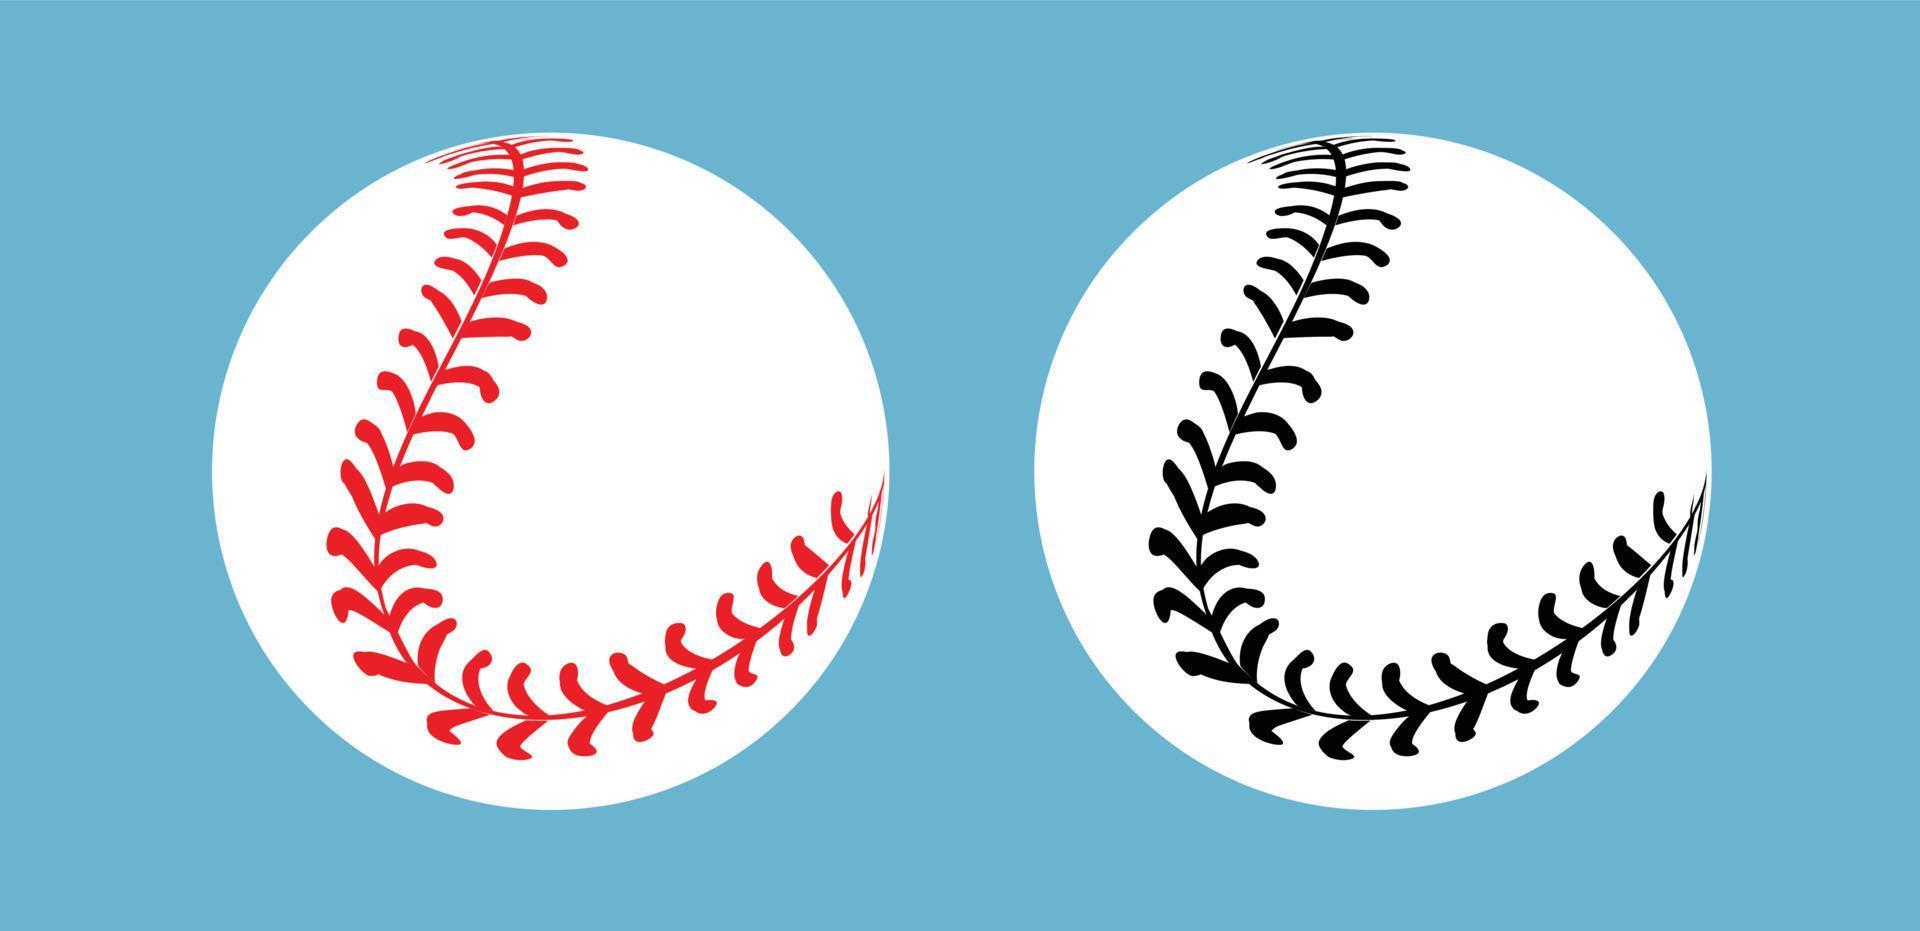 points de base-ball sur fond blanc , dessin vectoriel